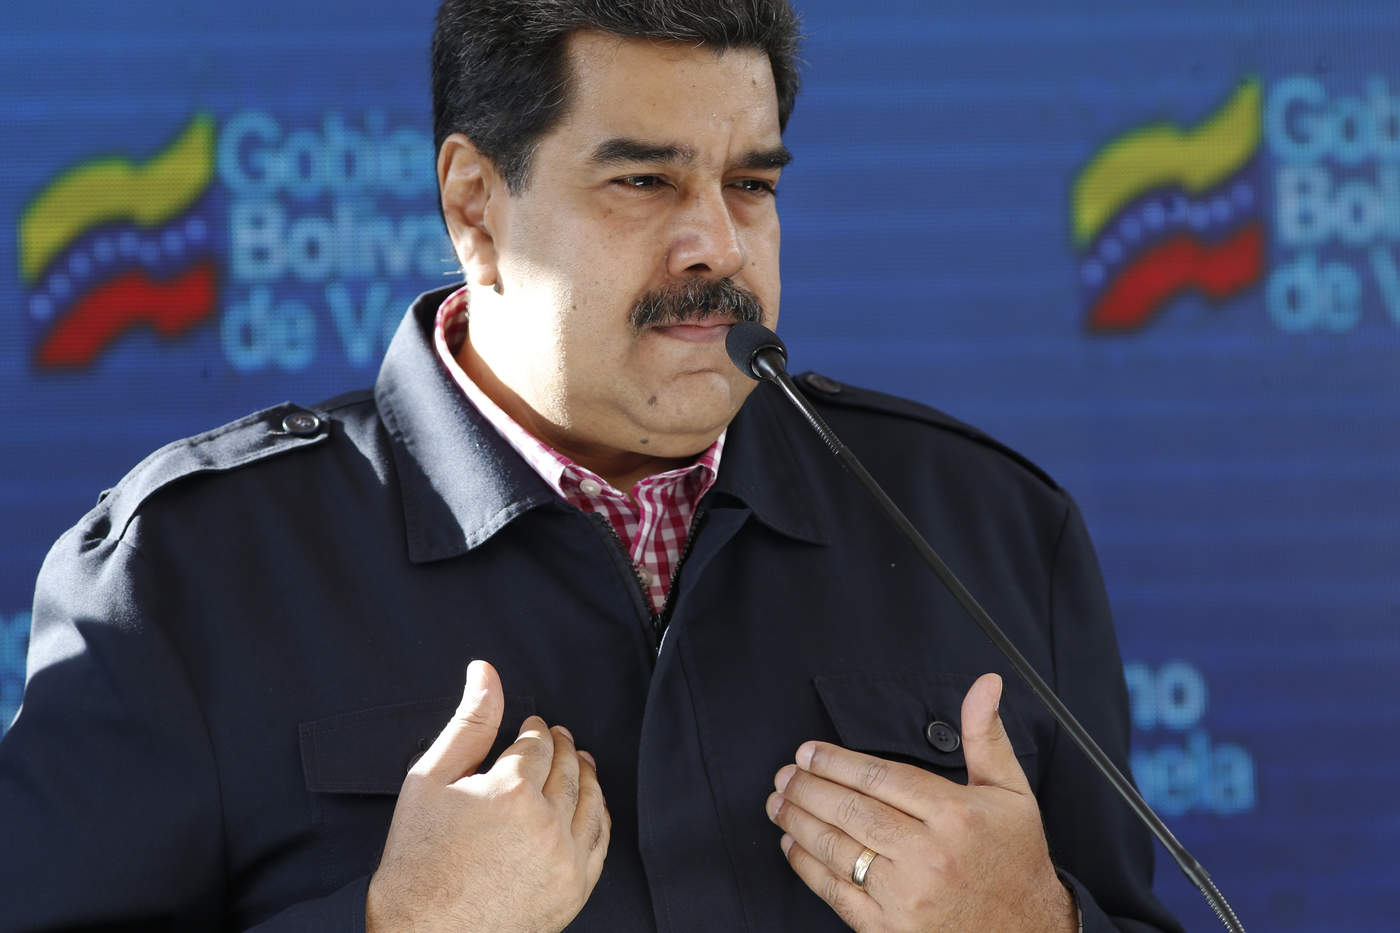 'Daremos respuesta, firme, clara, oportuna, inmediata, a la afrenta que pretenda cualquier Gobierno o cualquier instancia internacional contra nuestro país, Venezuela tiene quien la defienda', insistió. (AP)